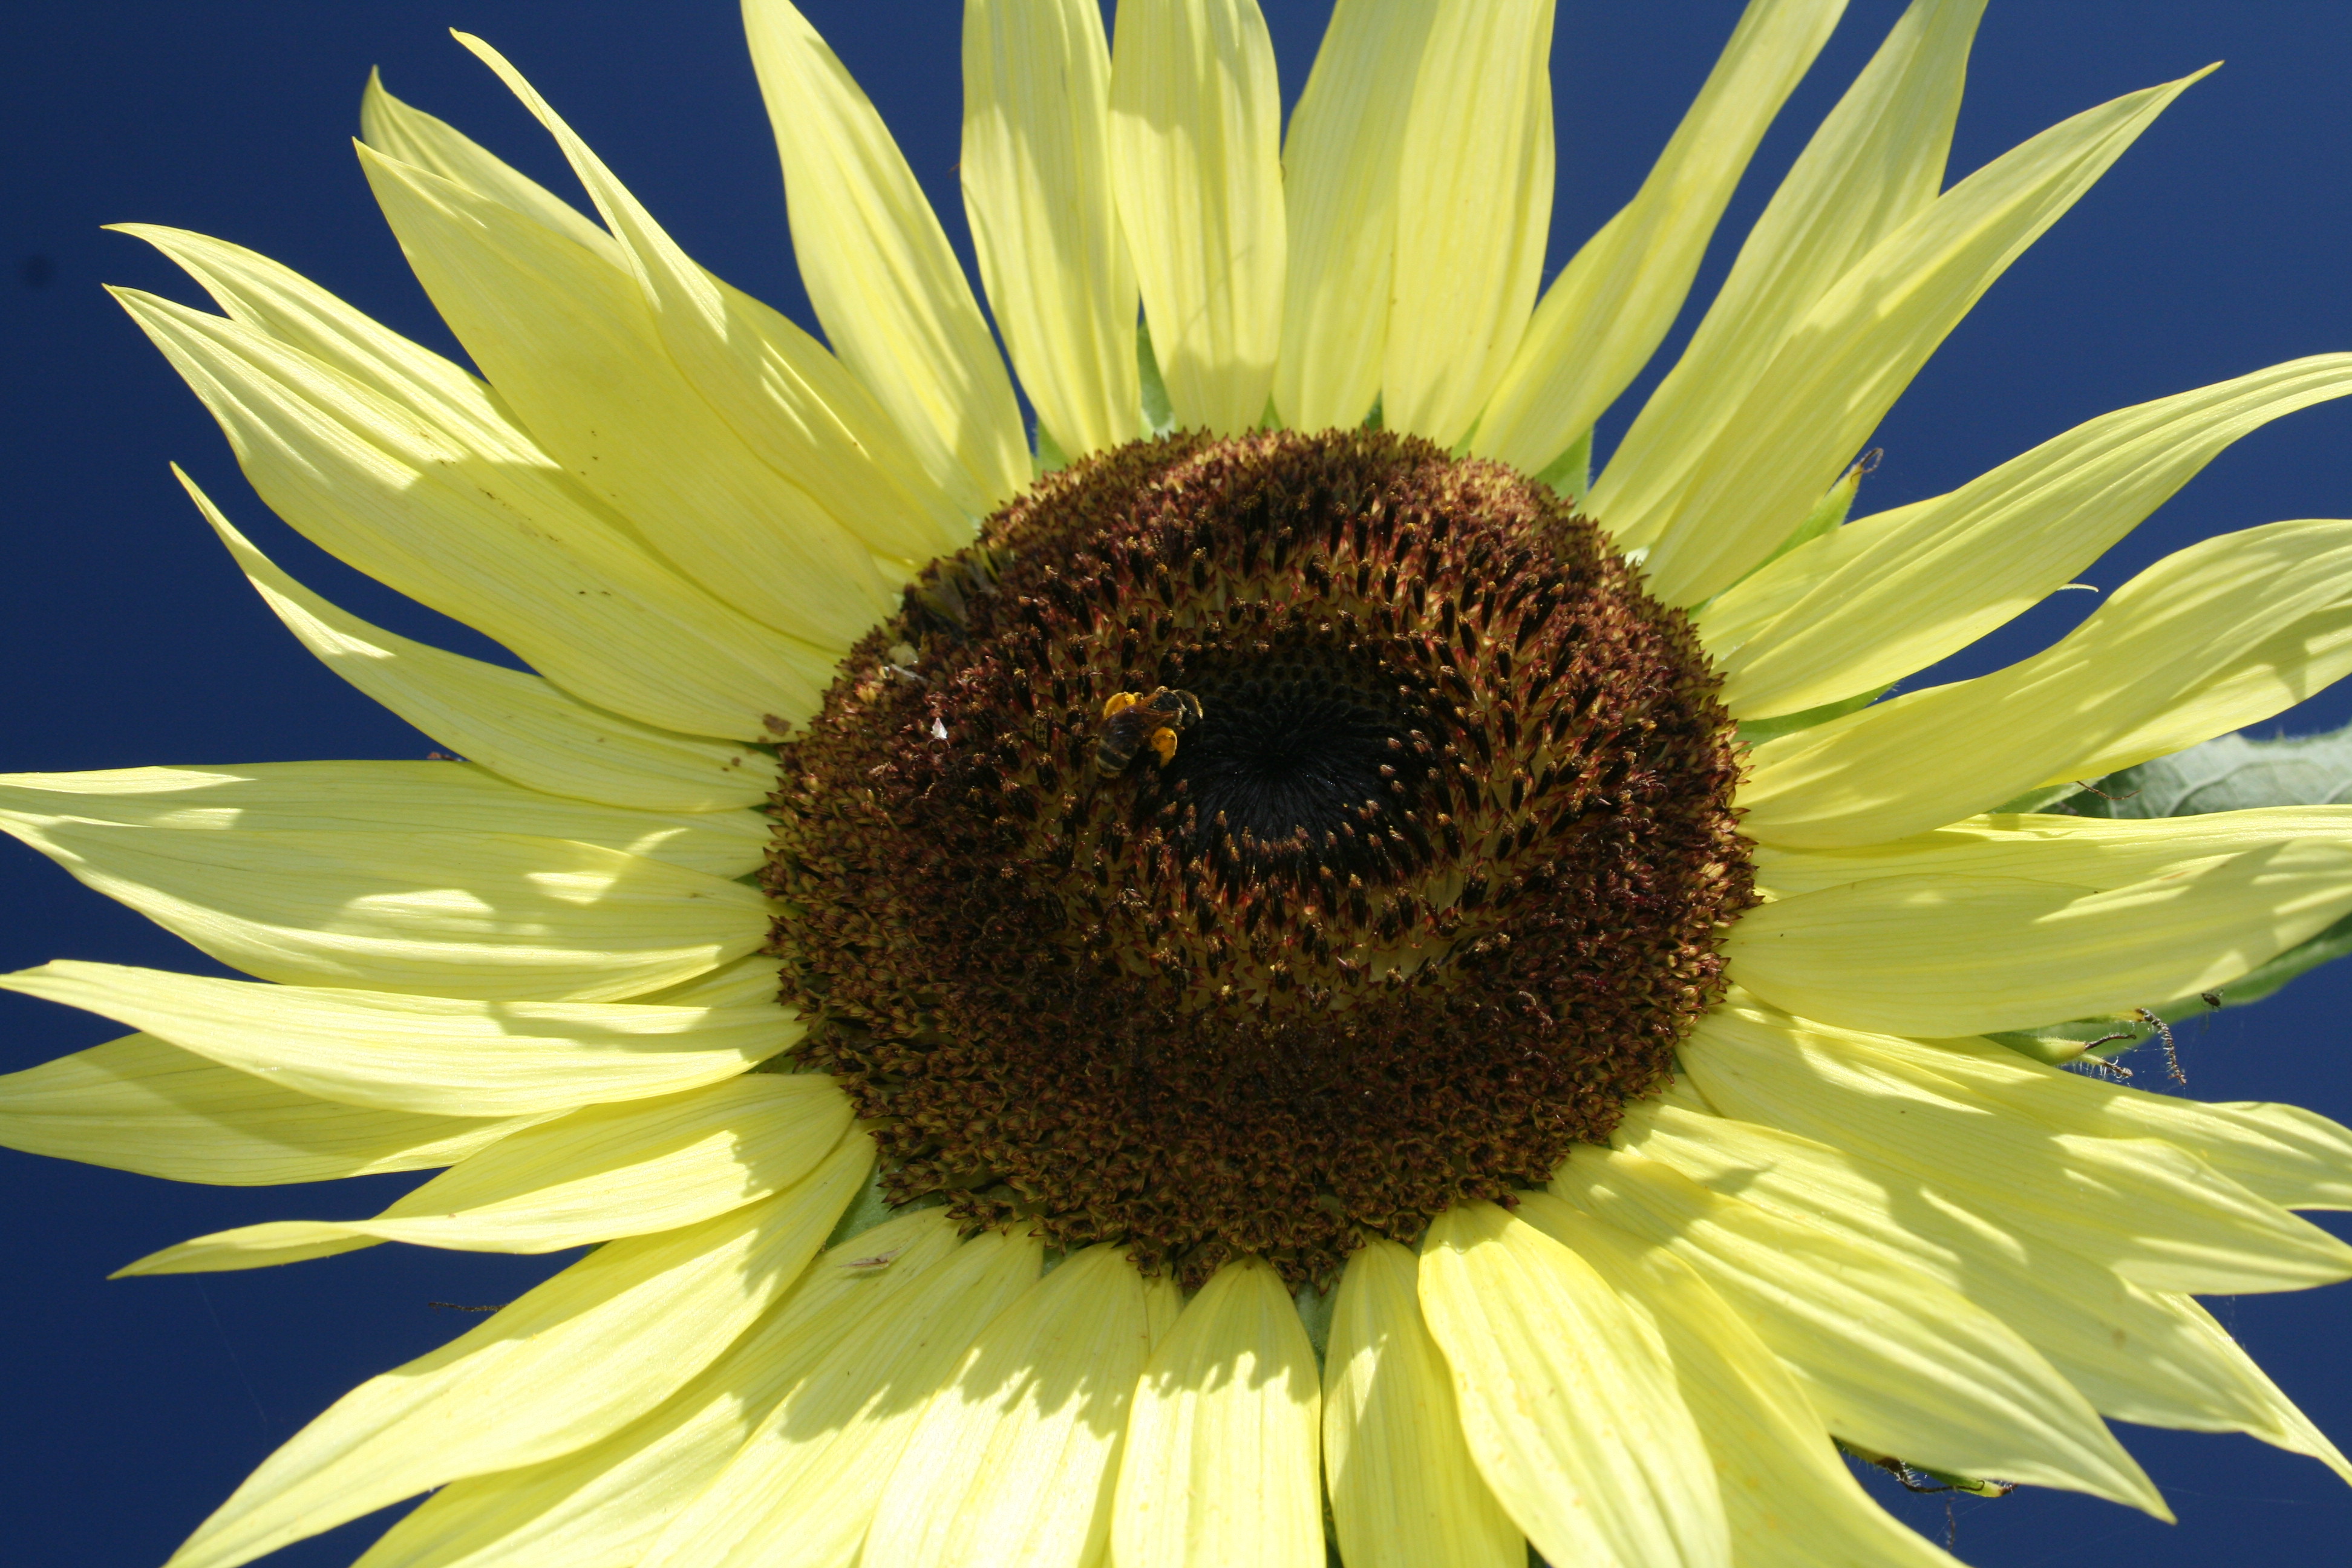 sunflower123456.jpg - Sunflower in bloom